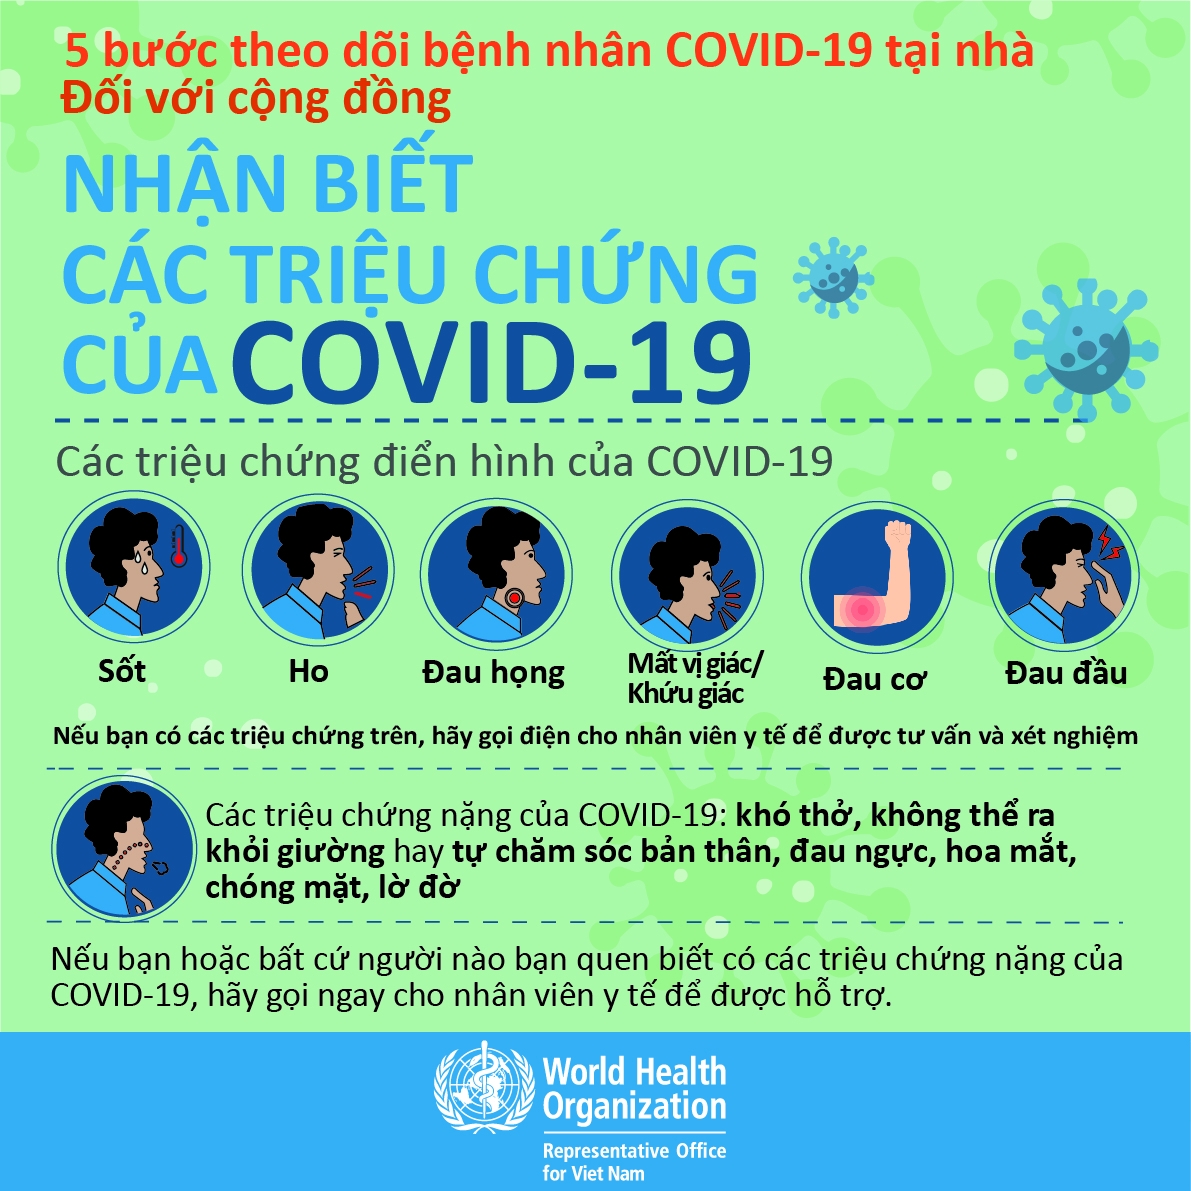 [Infographic]: 5 bước theo dõi bệnh nhân Covid-19 tại nhà